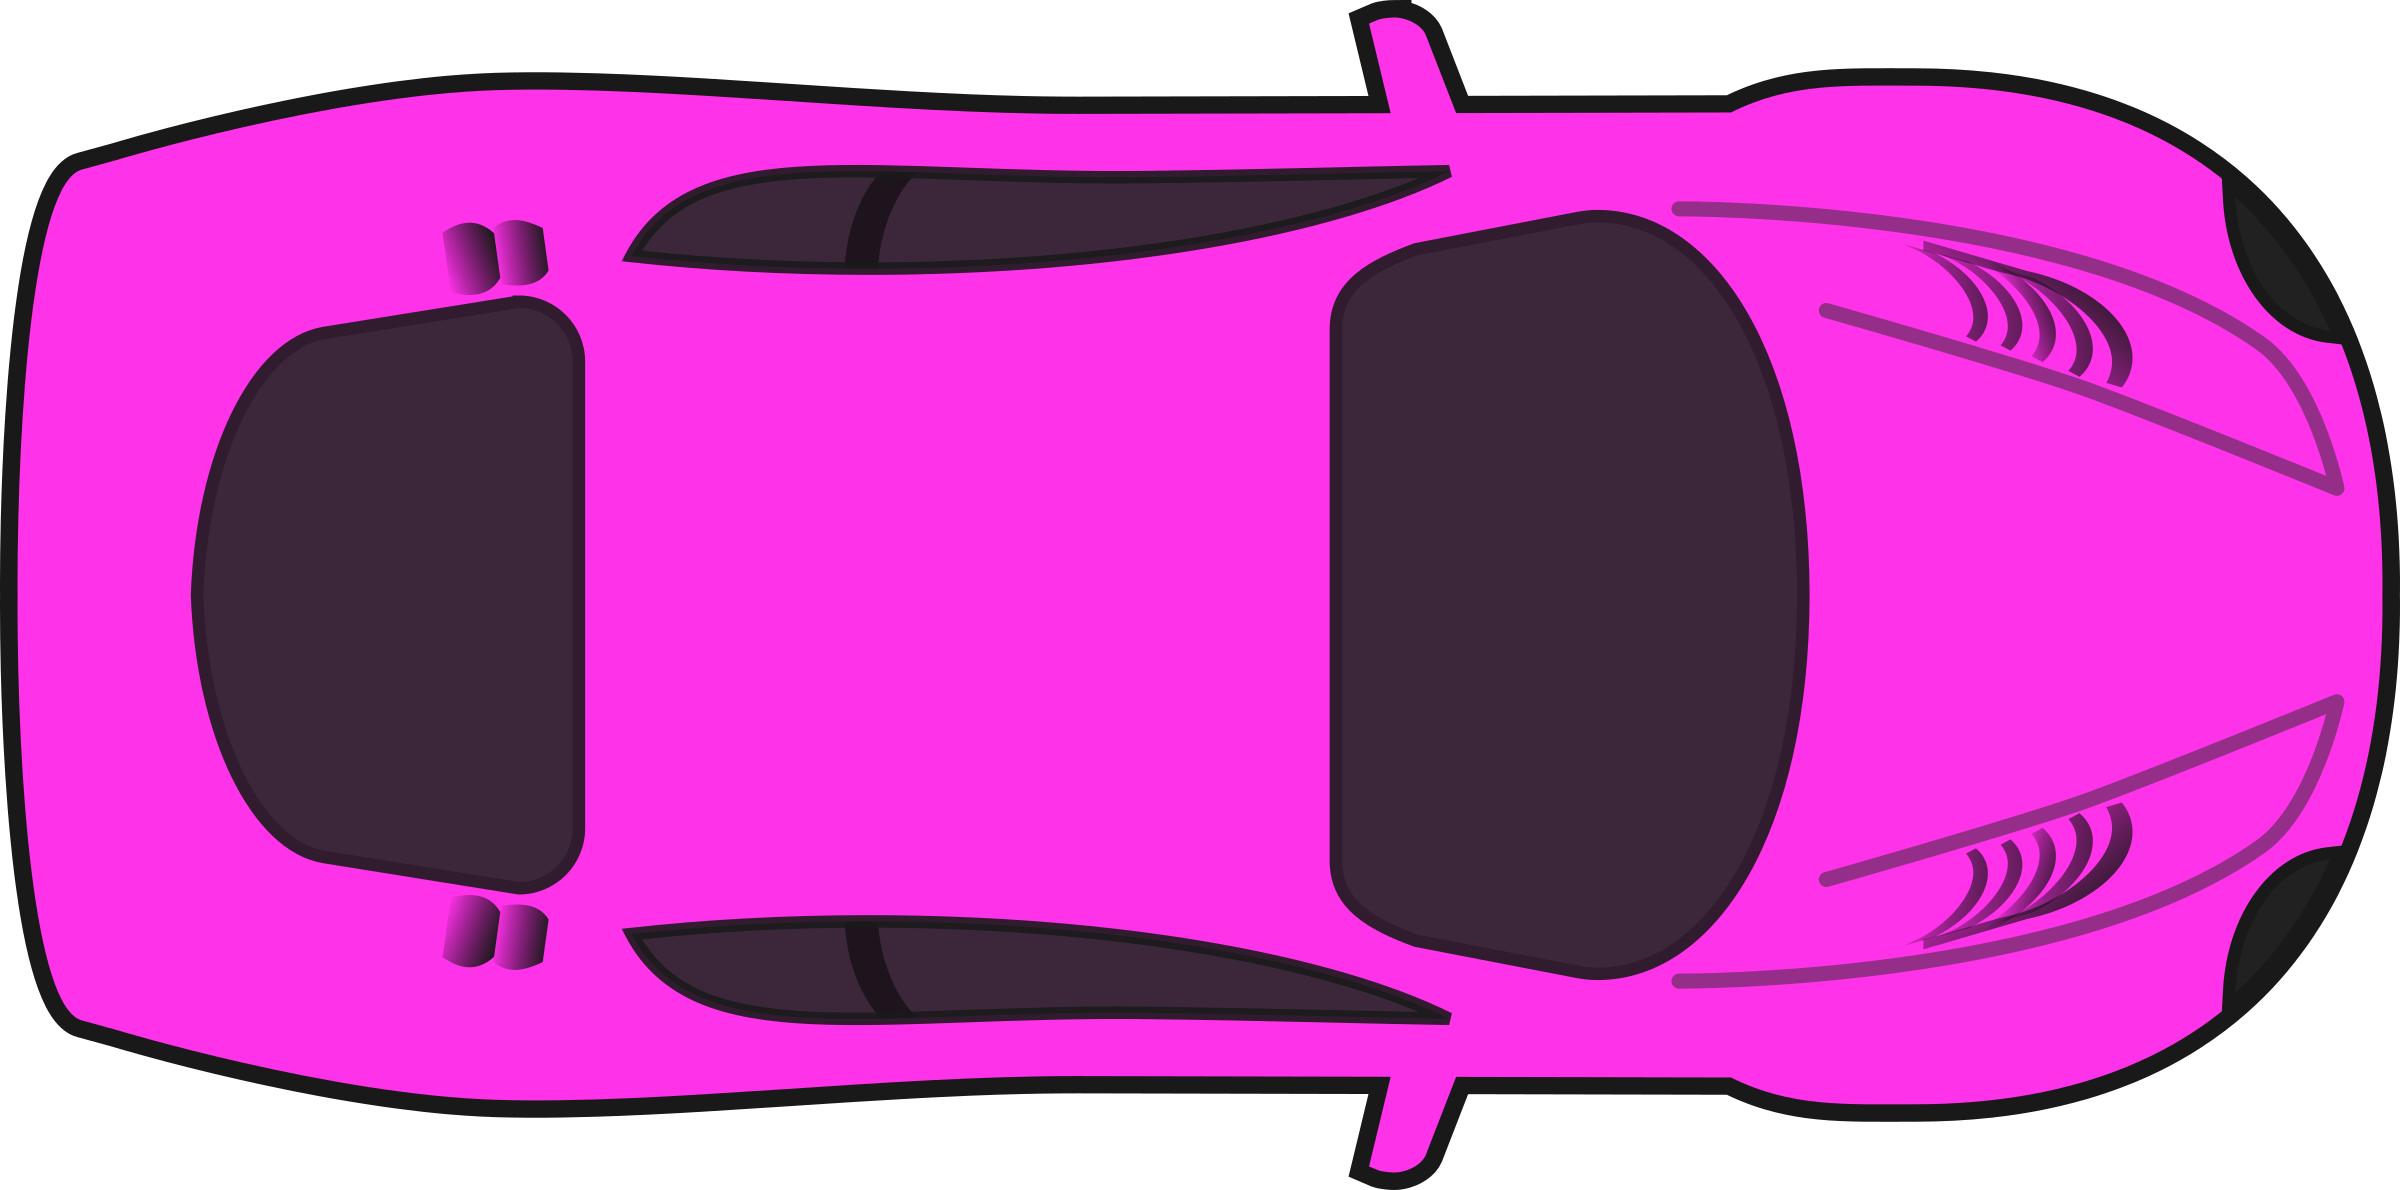 Pink Racing Car (Top View) png